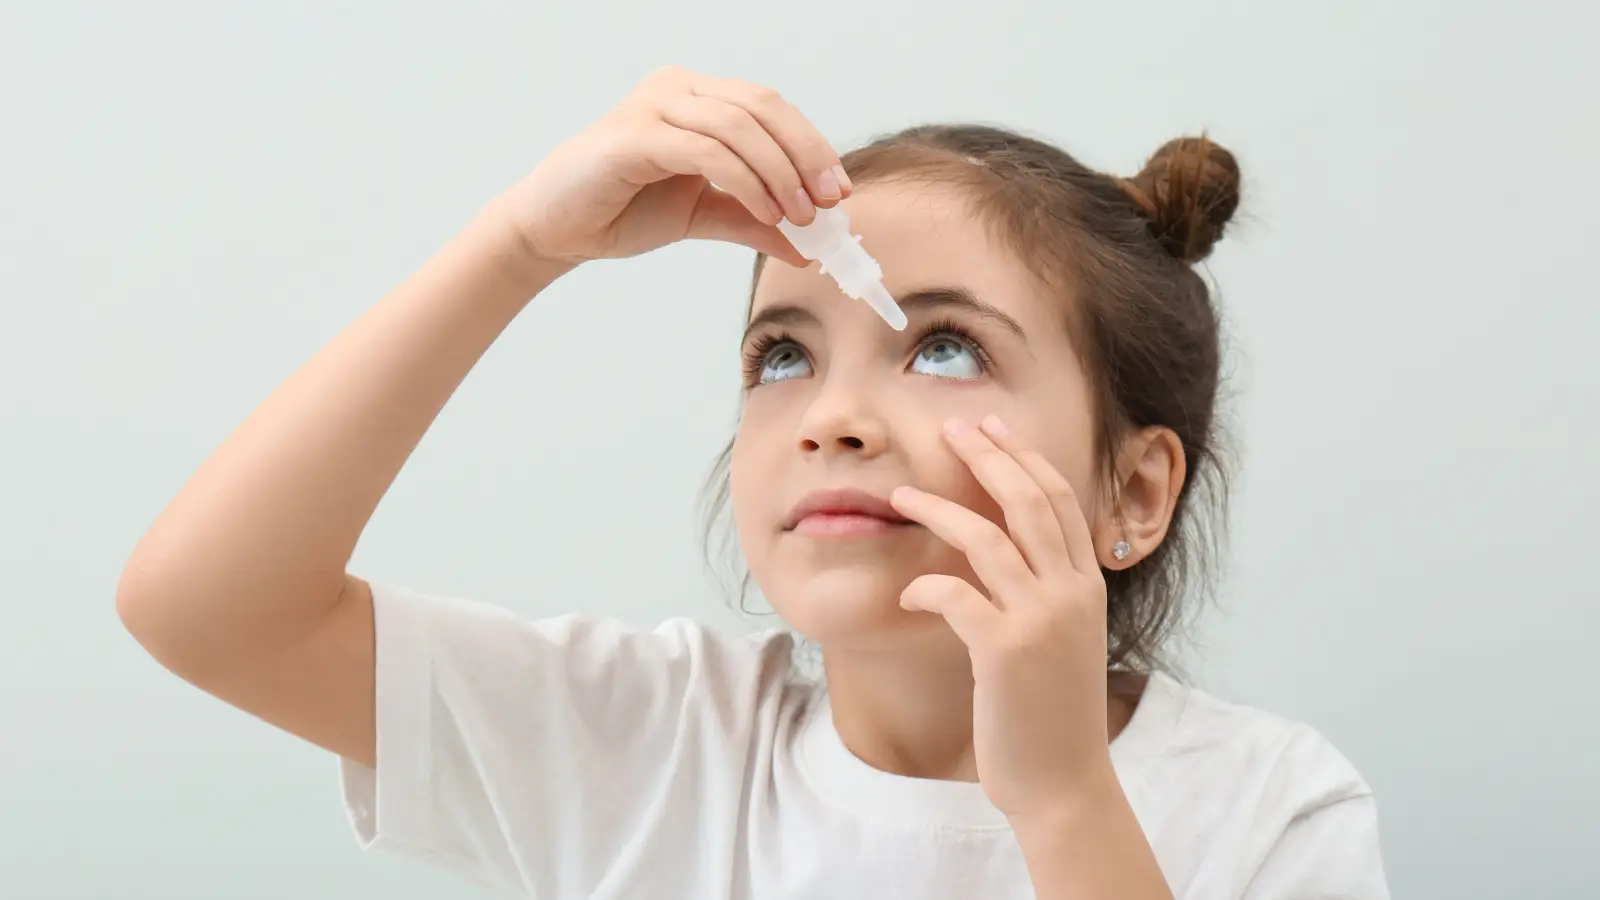 ما اسباب جفاف العينين عند الأطفال؟ وكيف يتم علاجه؟